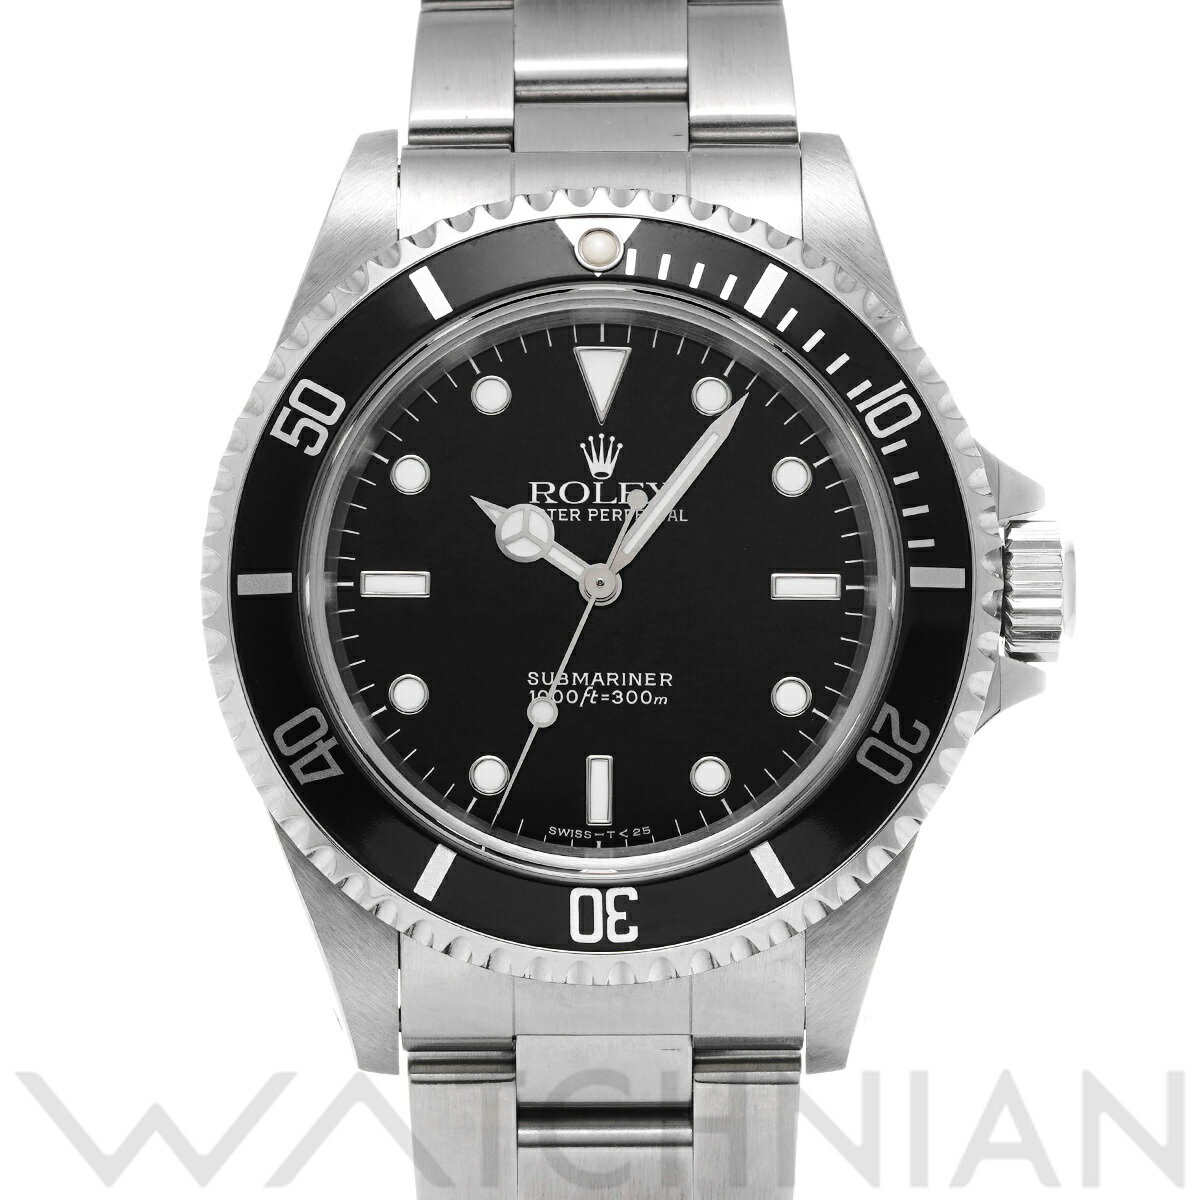 【ローン60回払い無金利】【中古】 ロレックス ROLEX サブマリーナ 14060 T番(1996年頃製造) ブラック メンズ 腕時計 ロレックス 時計 高級腕時計 ブランド